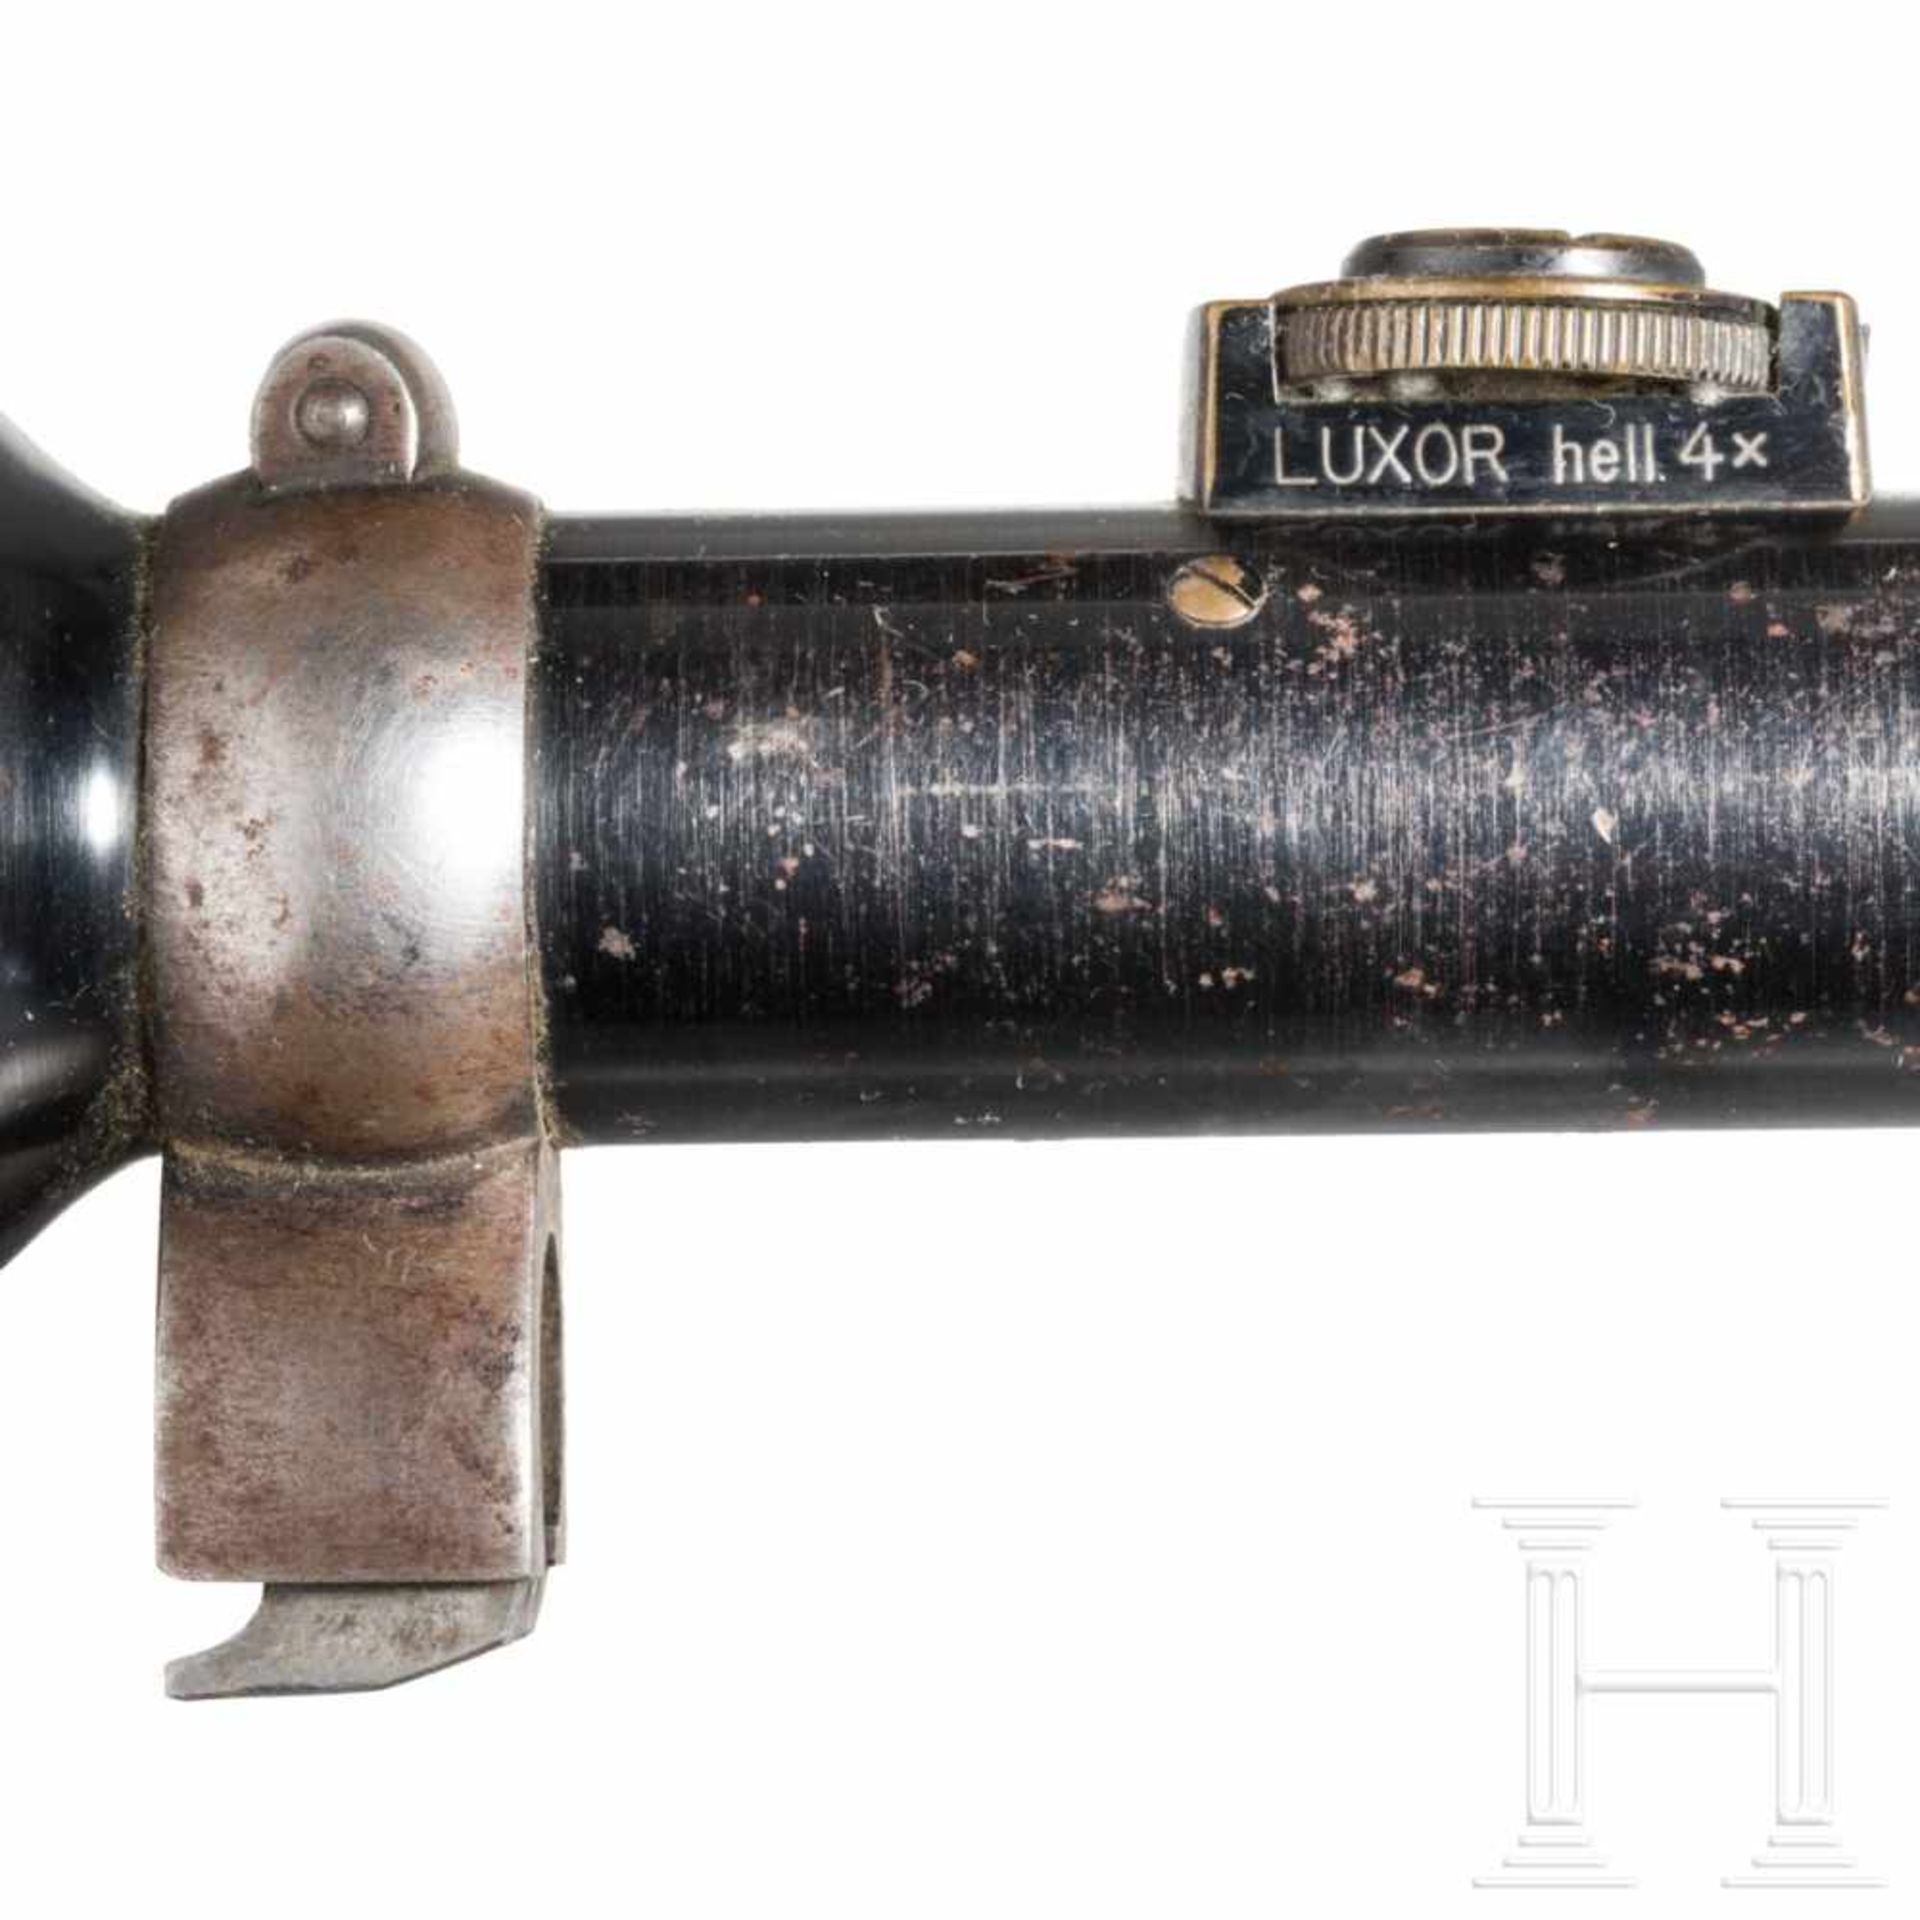 Rifle scope OIGEE Luxor hell 4 x with quiverStahl, brüniert (berieben), Herstellerbezeichnung, - Bild 4 aus 8